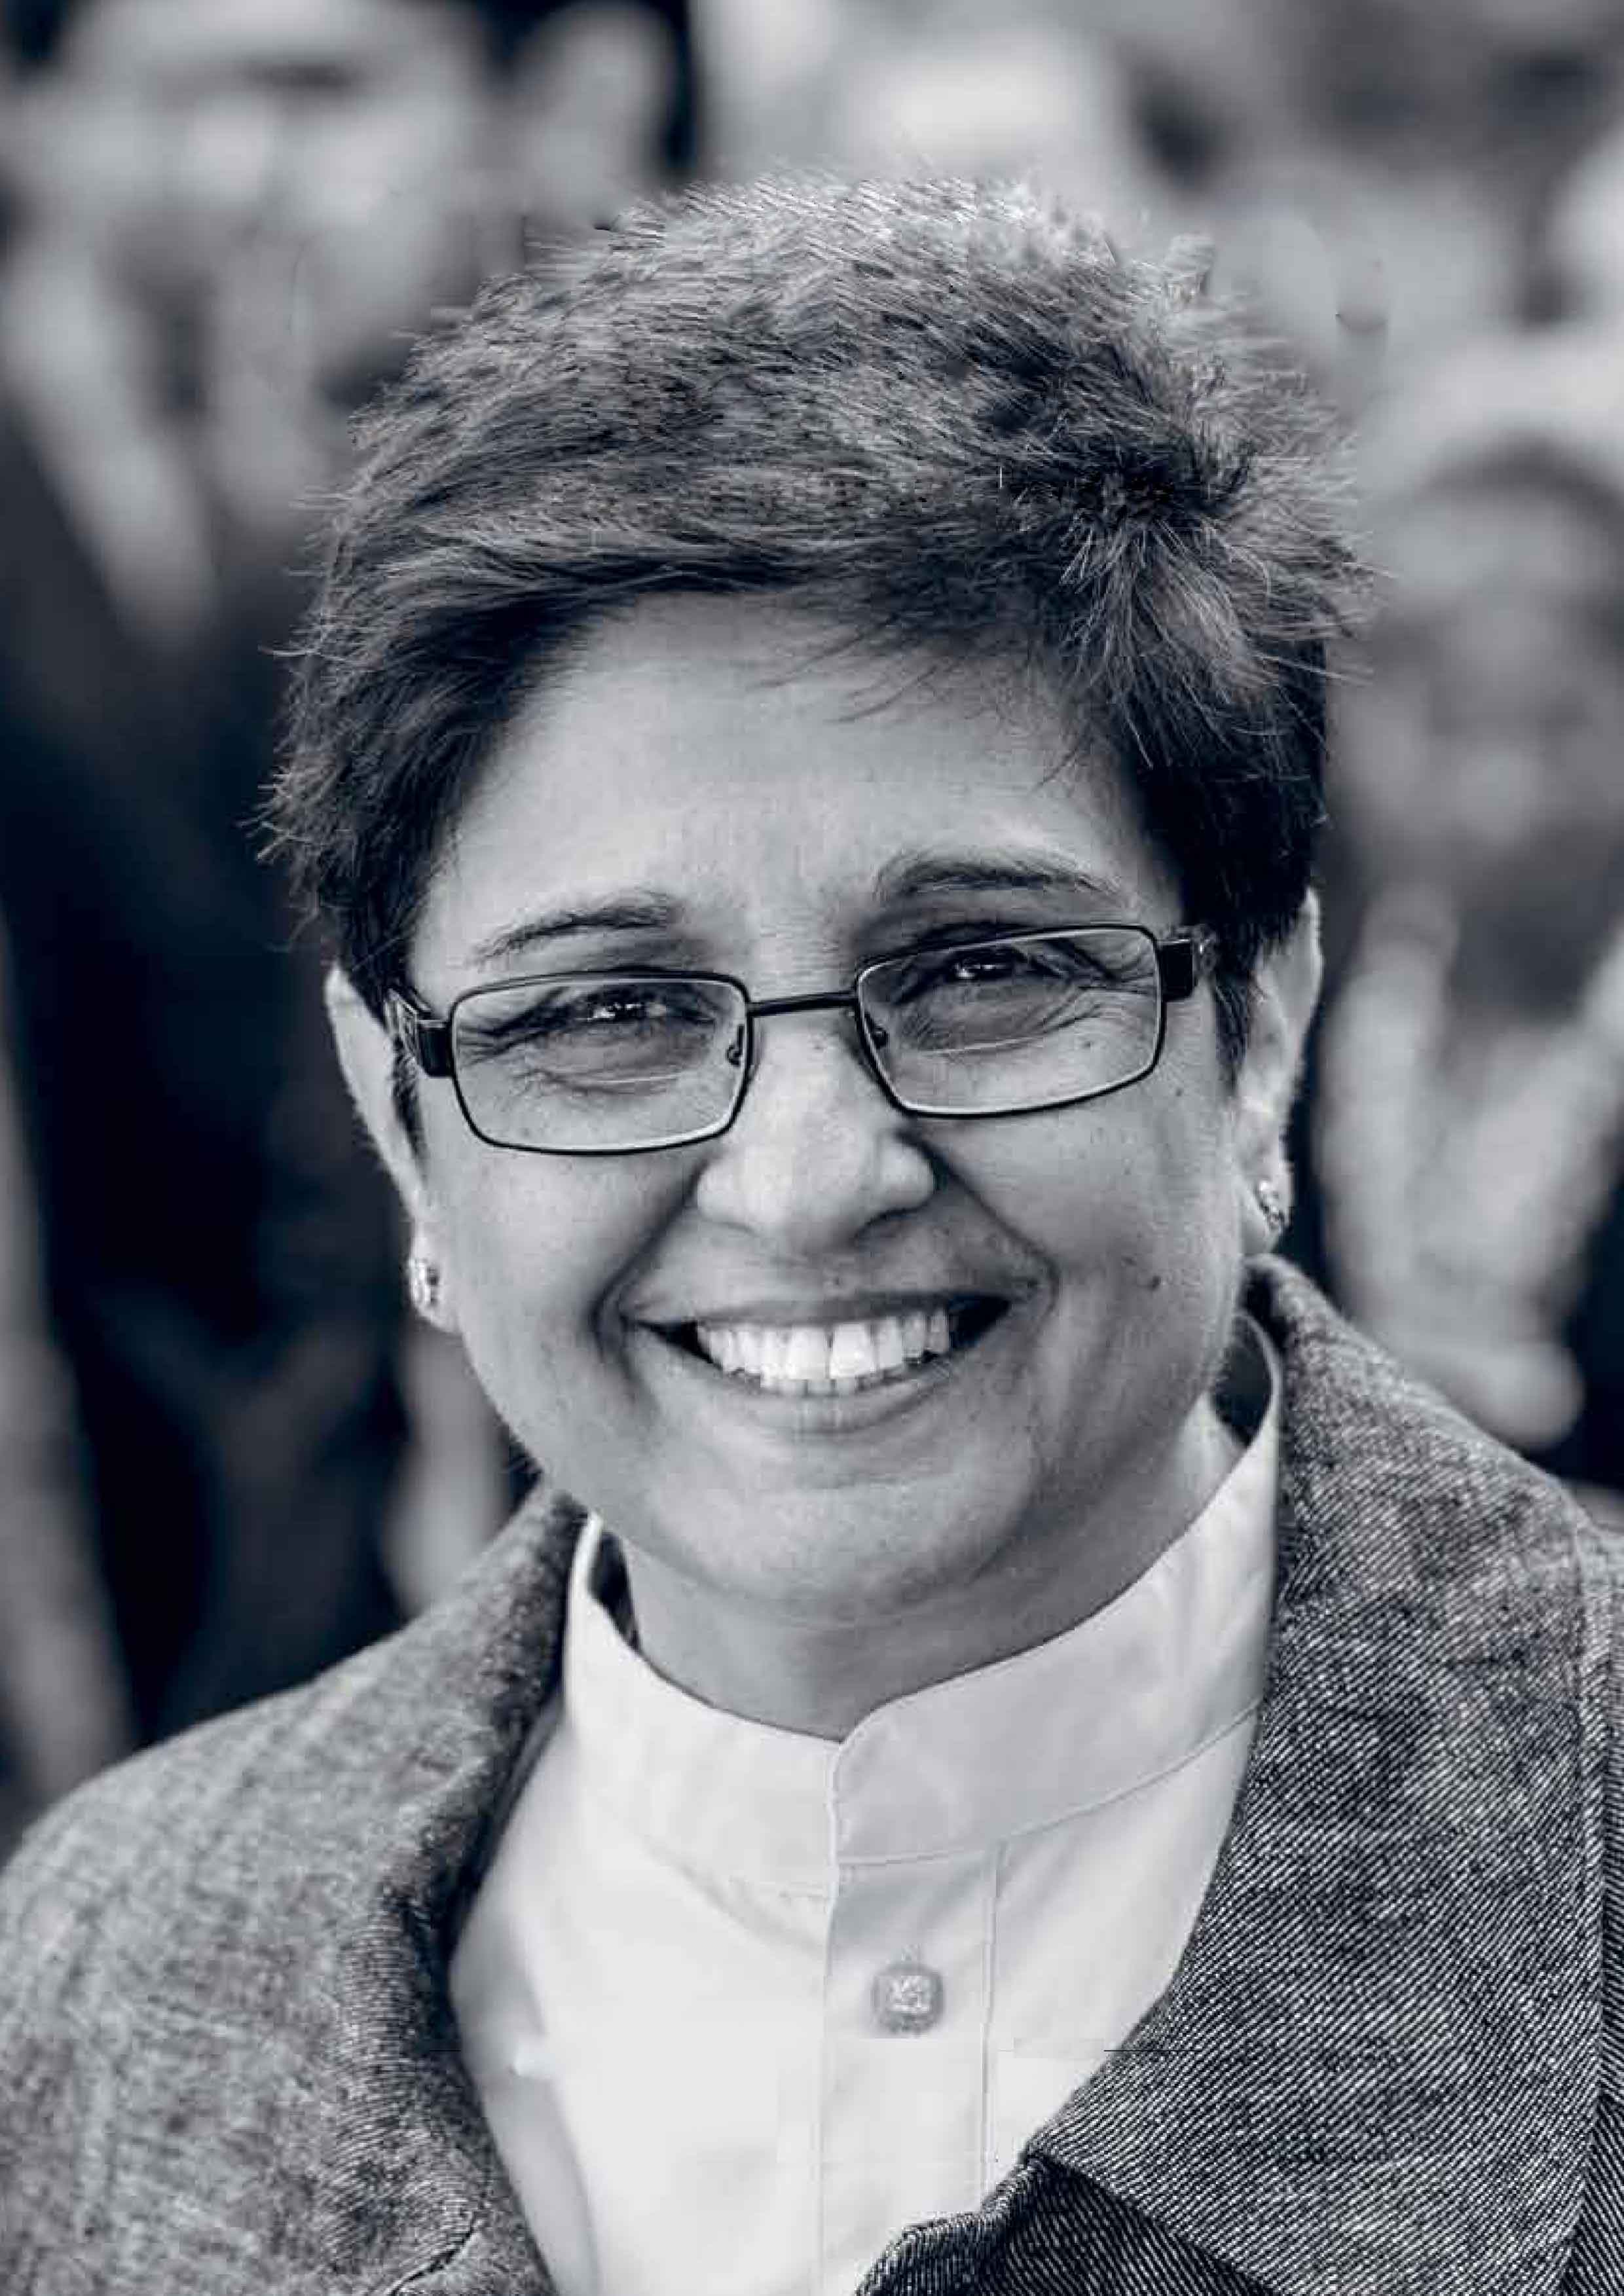 Dr Kiran Bedi